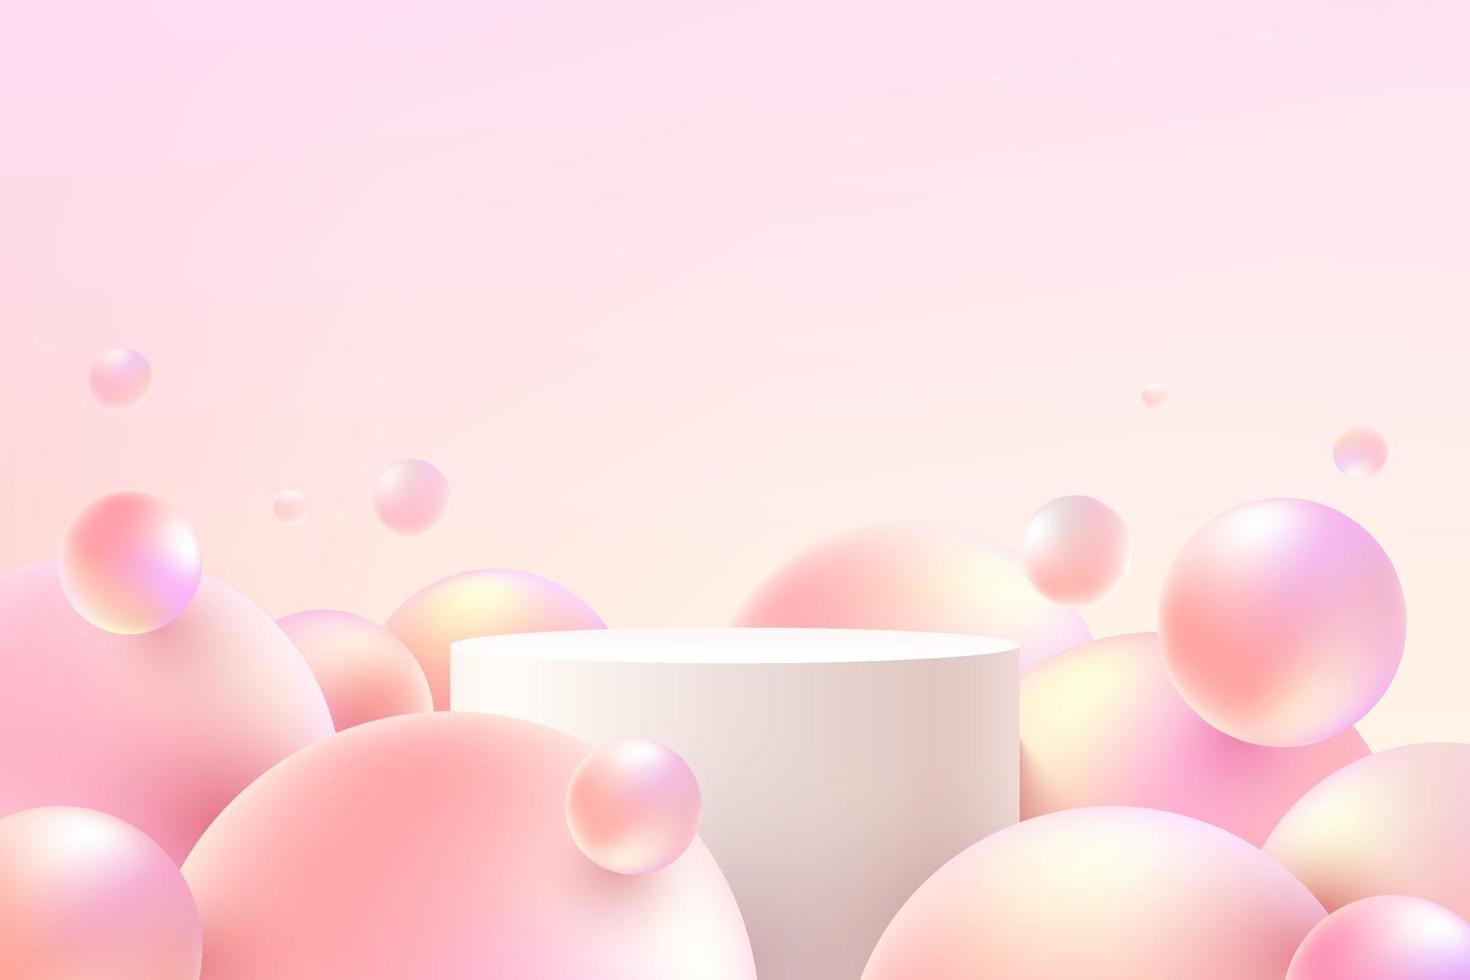 podio de pedestal de cilindro realista blanco y rosa con bola de esfera voladora o burbuja rosa. sala de estudio abstracto vectorial con plataforma geométrica 3d. escena mínima pastel para exhibición de promoción de productos. vector